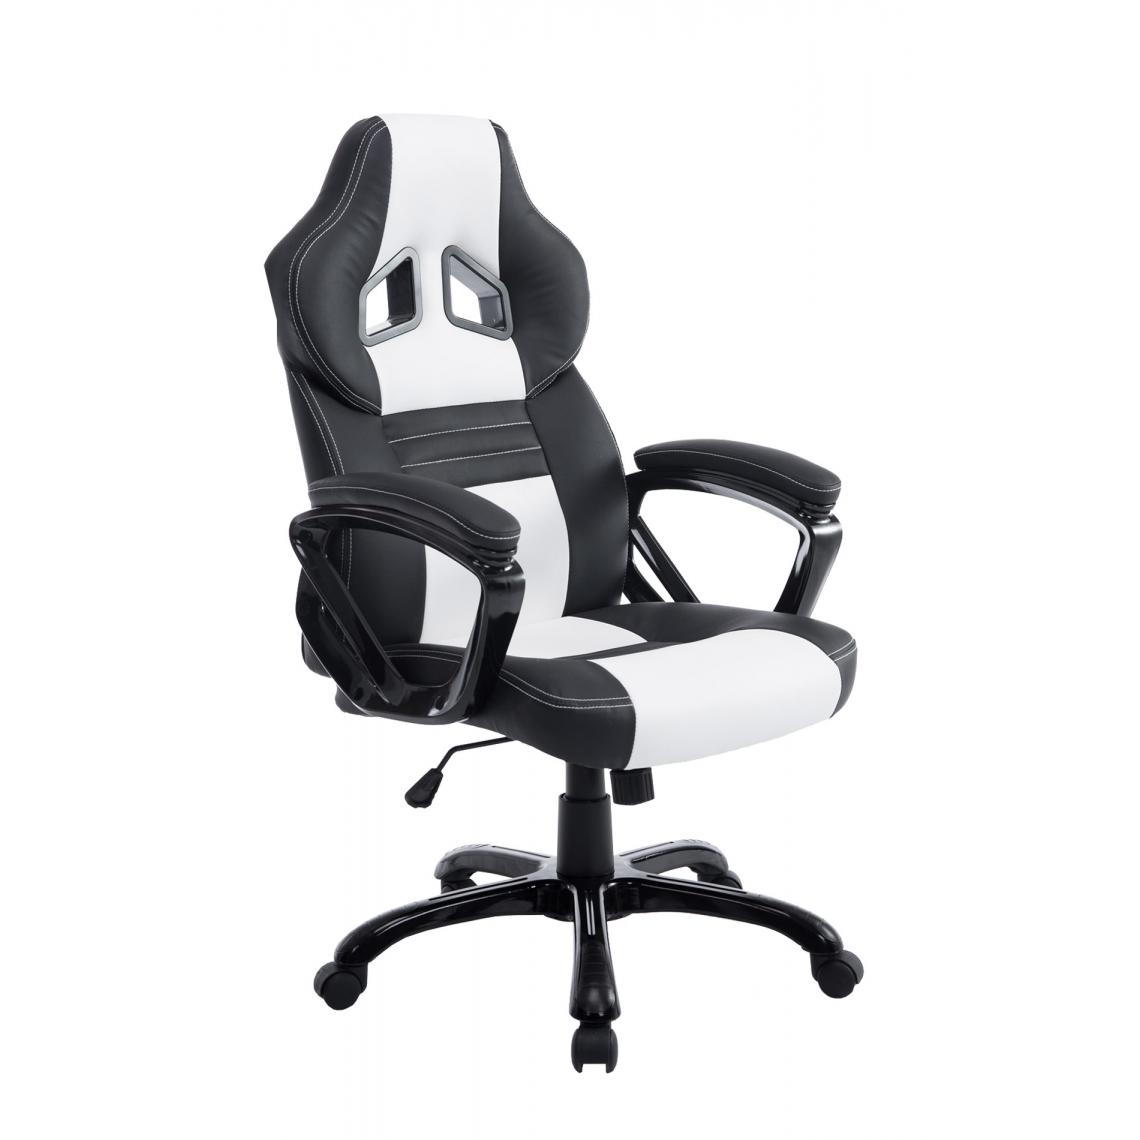 Icaverne - Superbe Chaise de bureau serie Malé couleur noir et blanc - Chaises